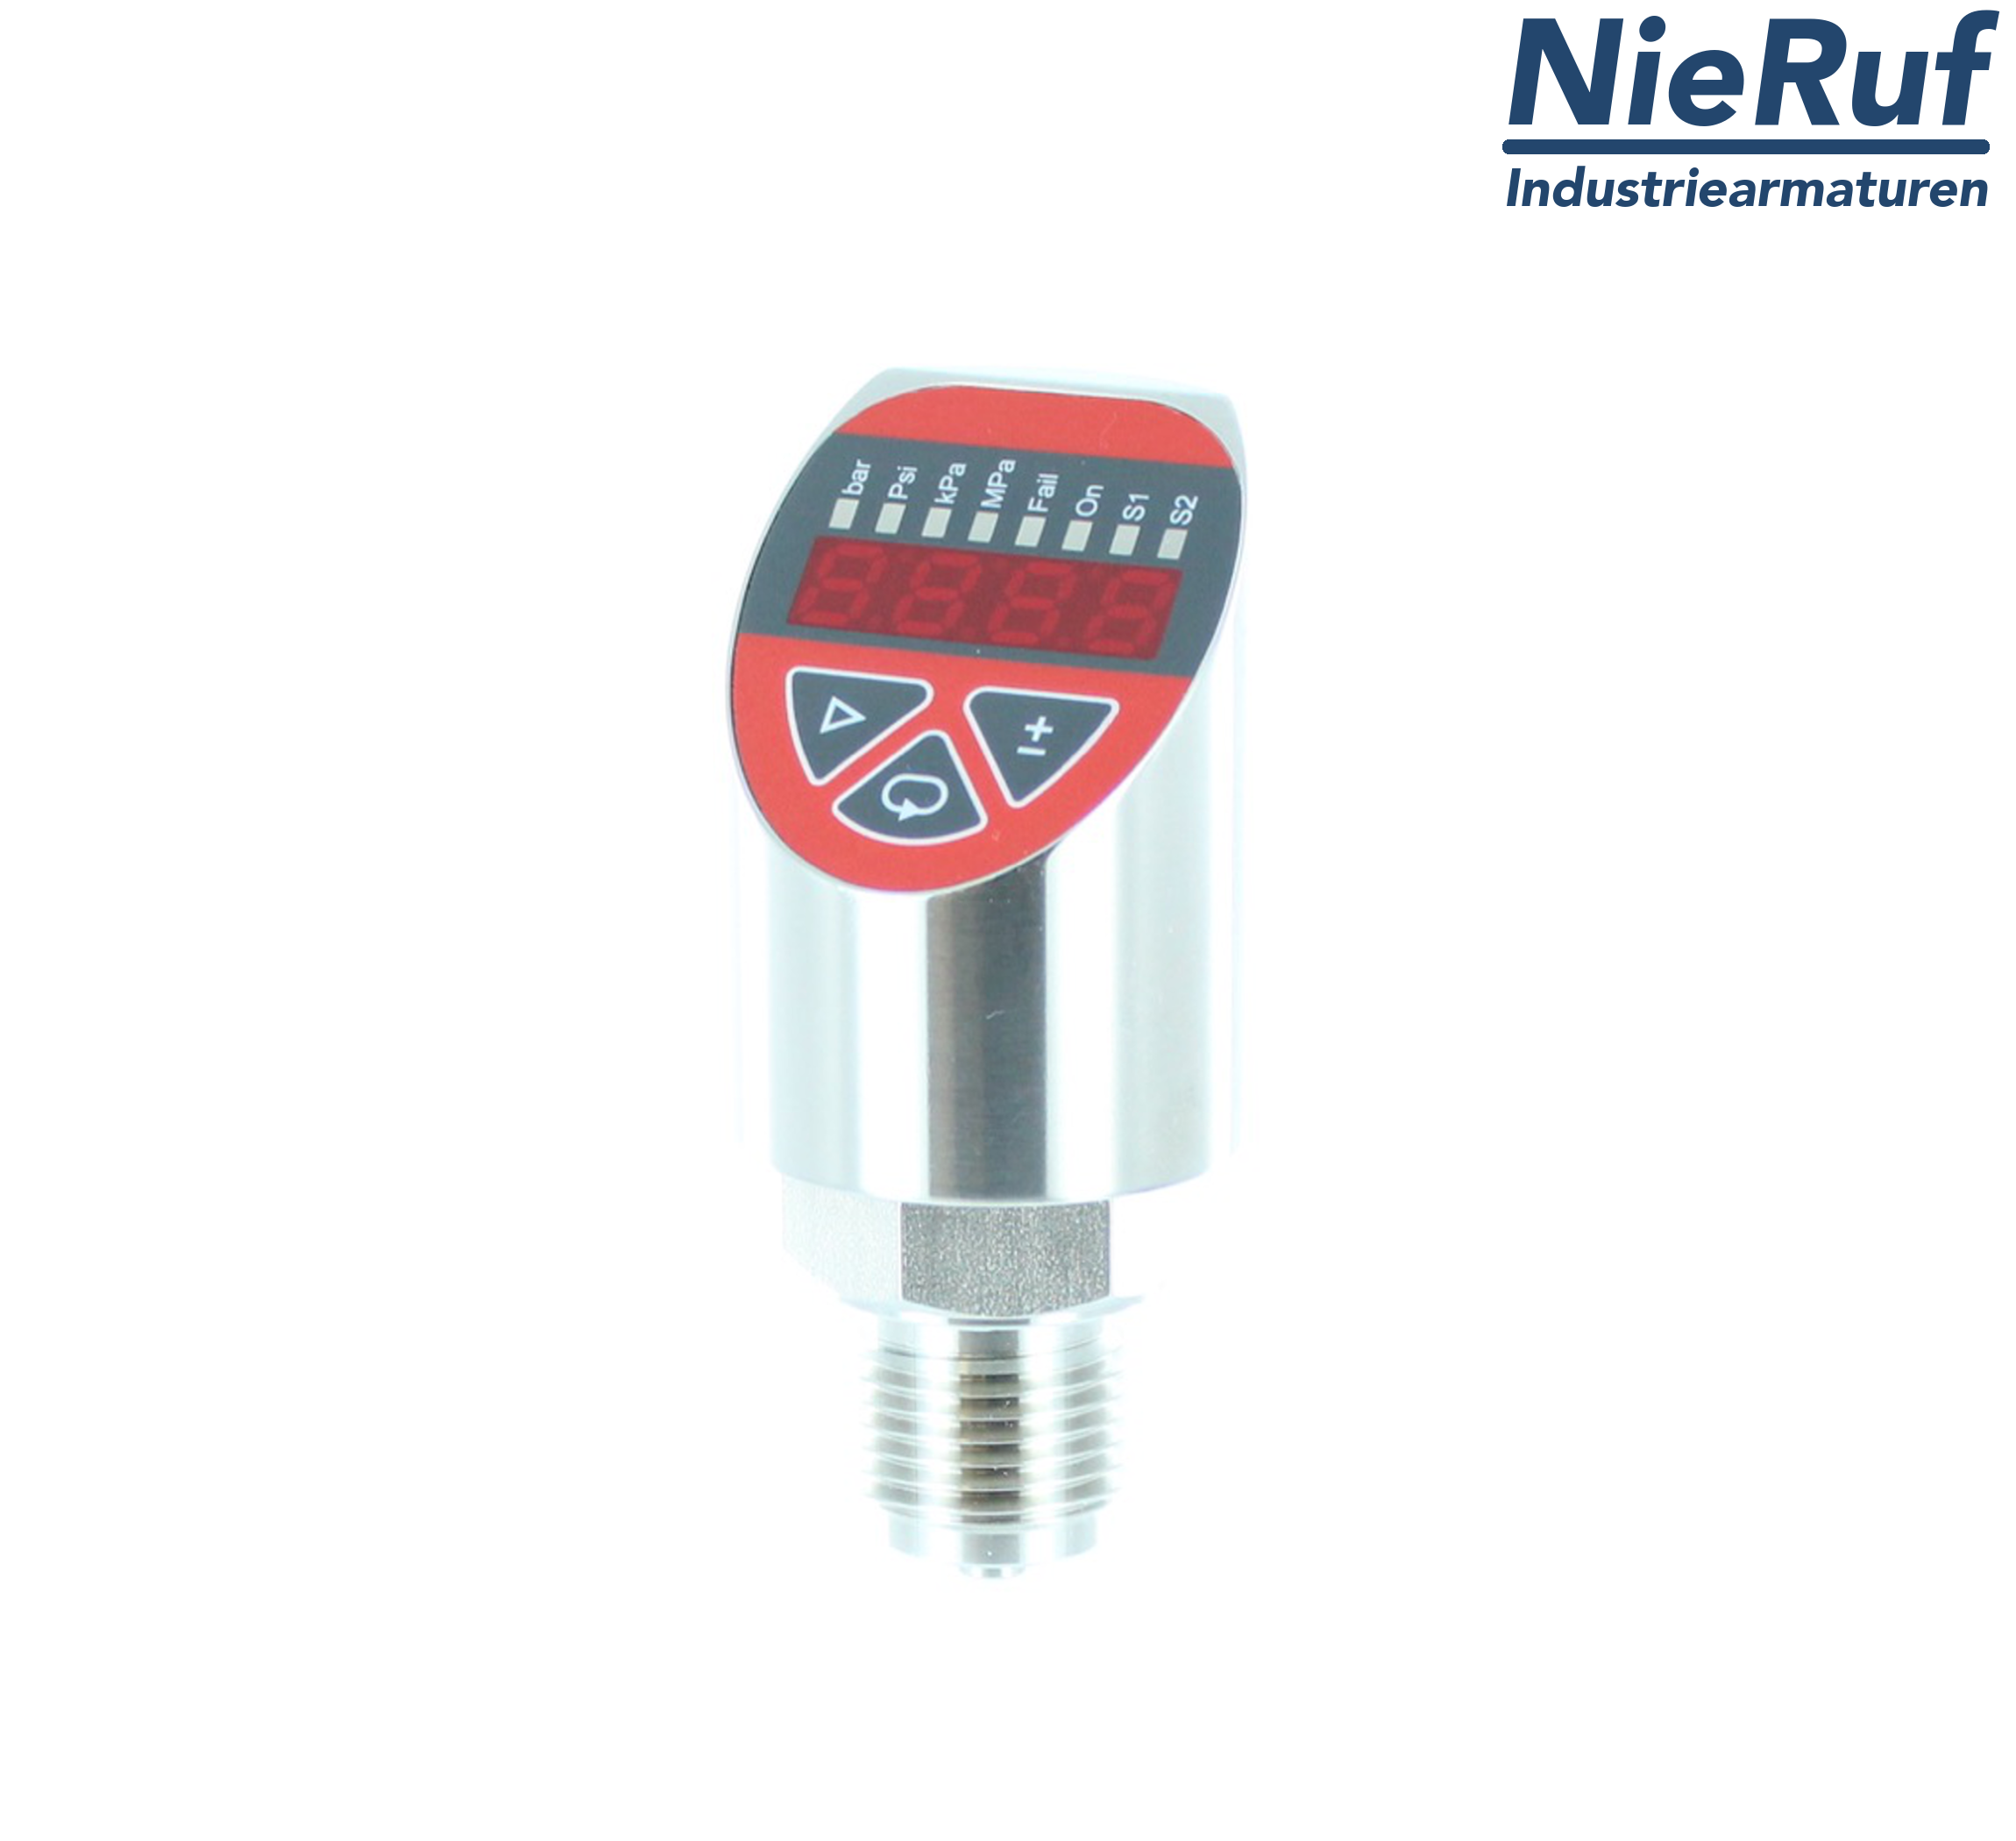 digital pressure sensor G 1/2" B IB 4-wire: 1xPNP, 1x4 - 20mA FPM 0,0 - 400,0 bar